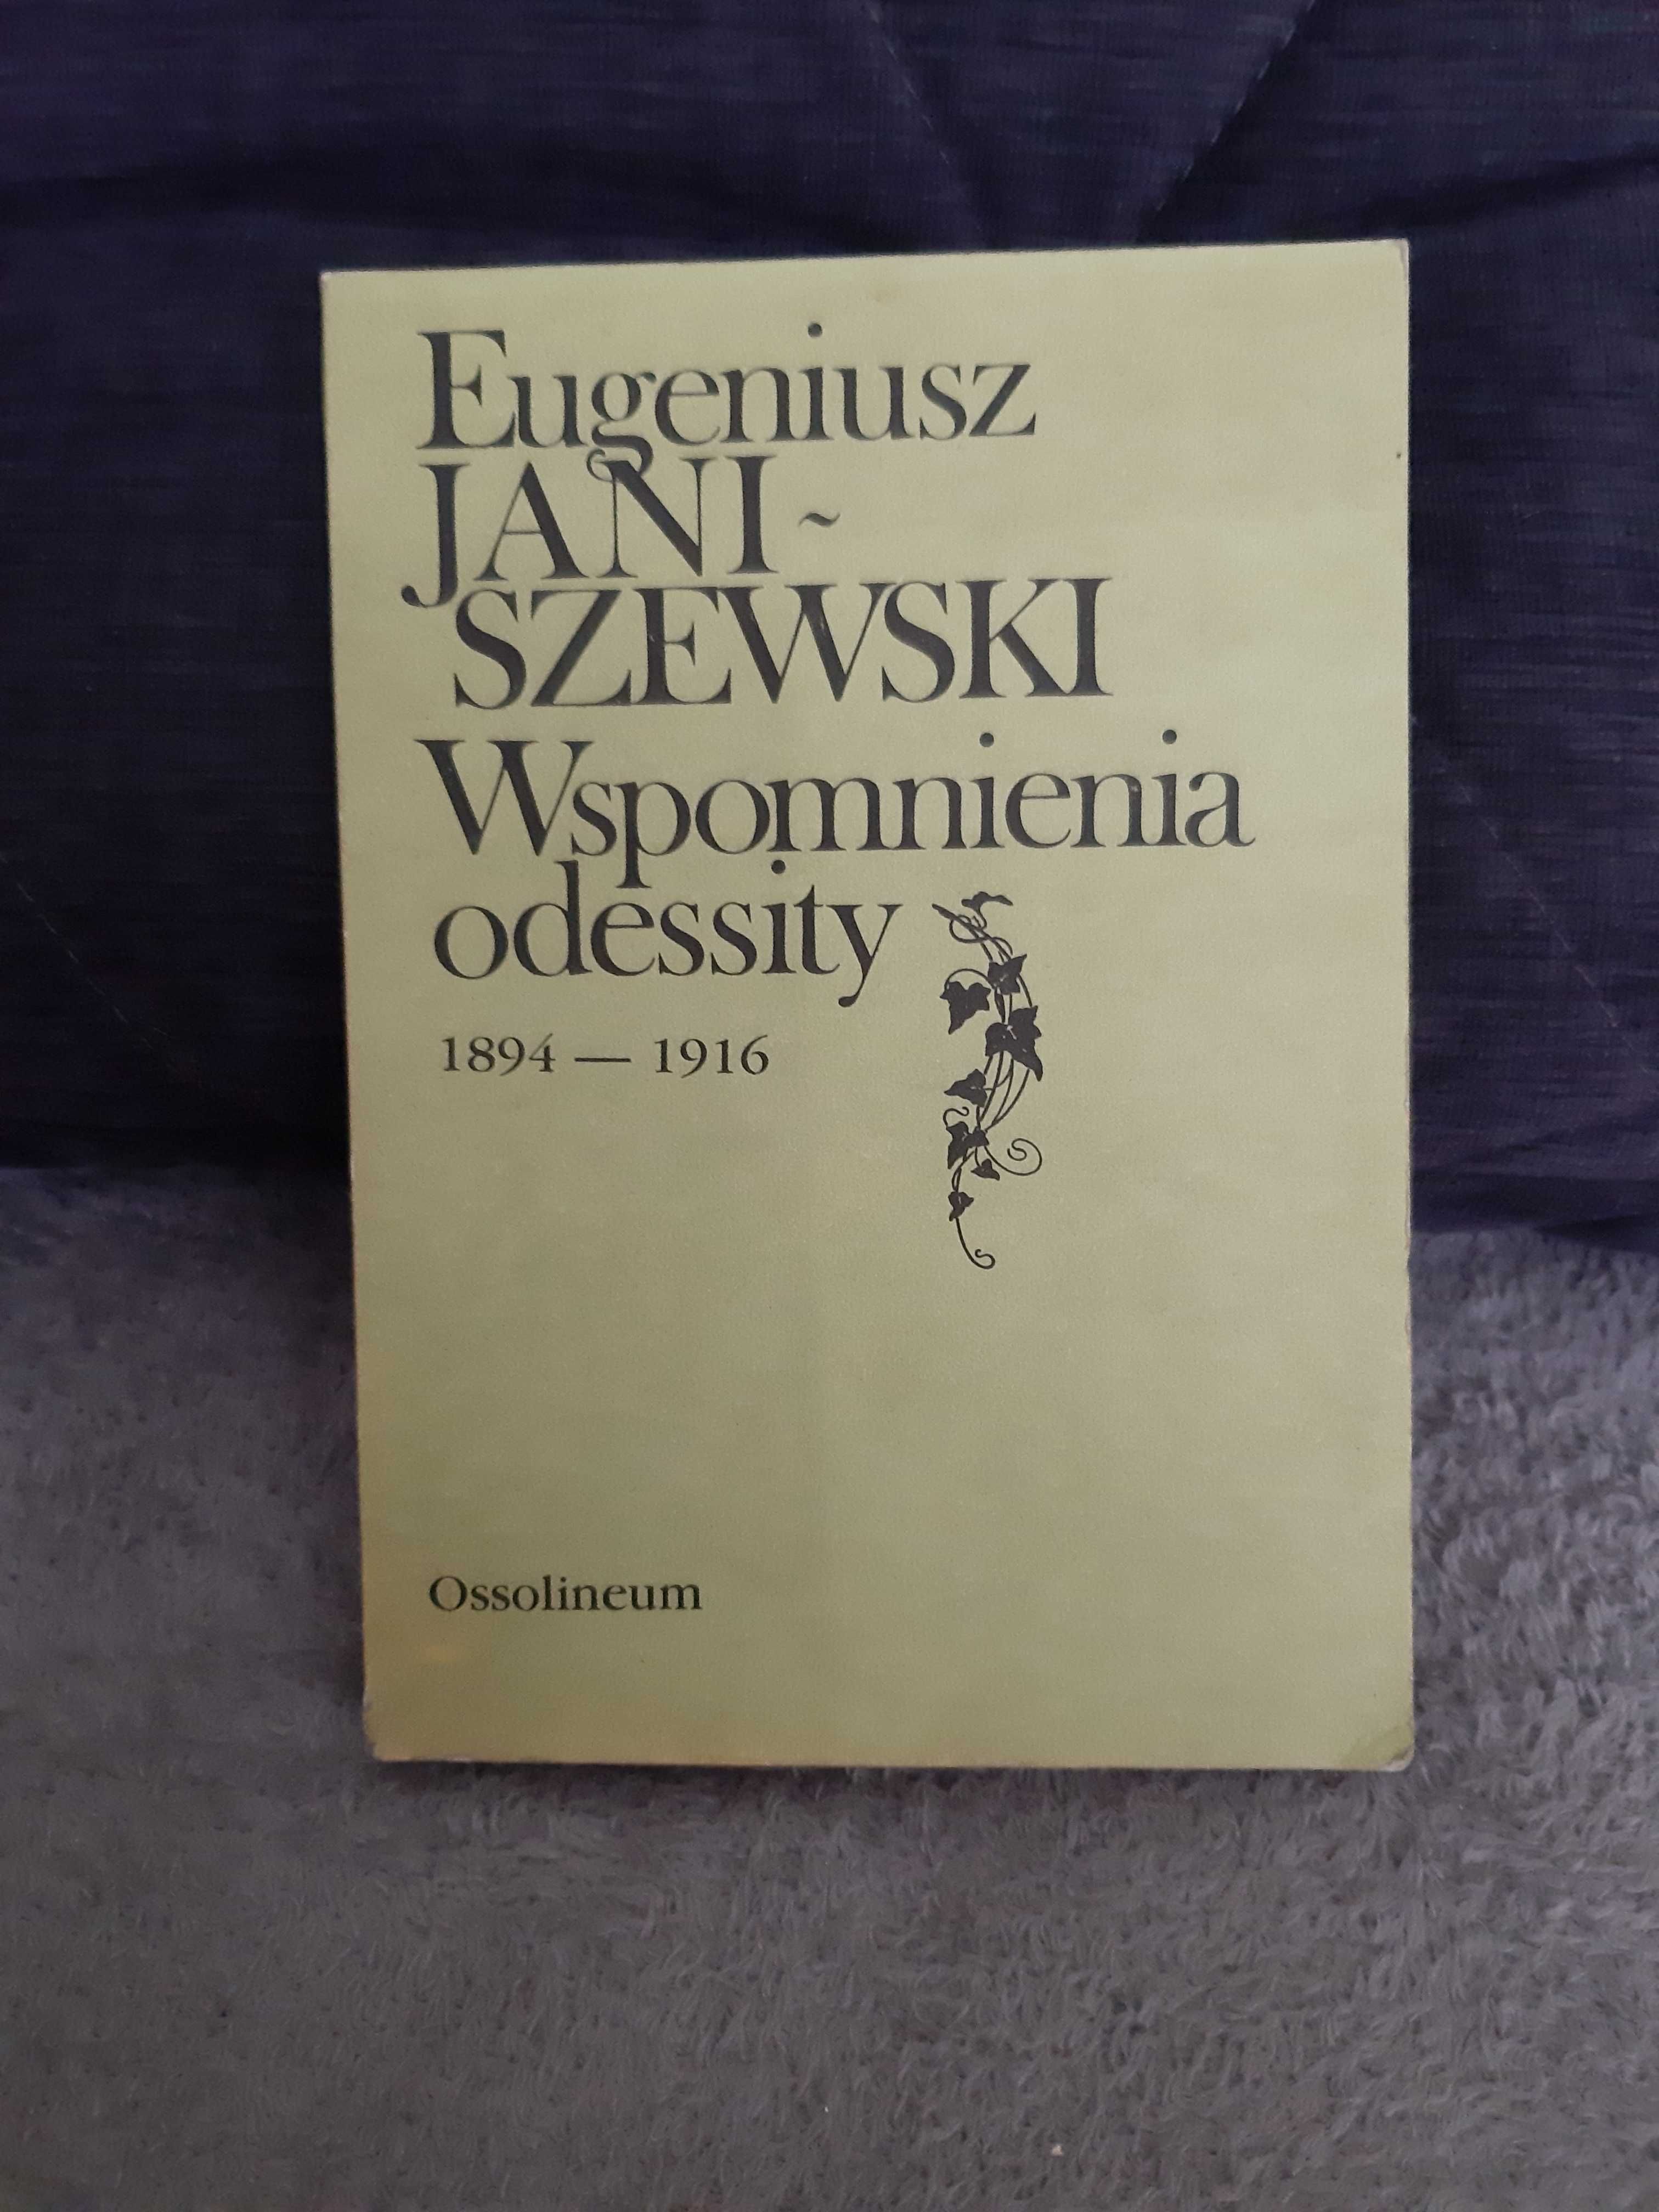 E. Janiszewski " Wspomnienia odessity 1894 - 1916 "